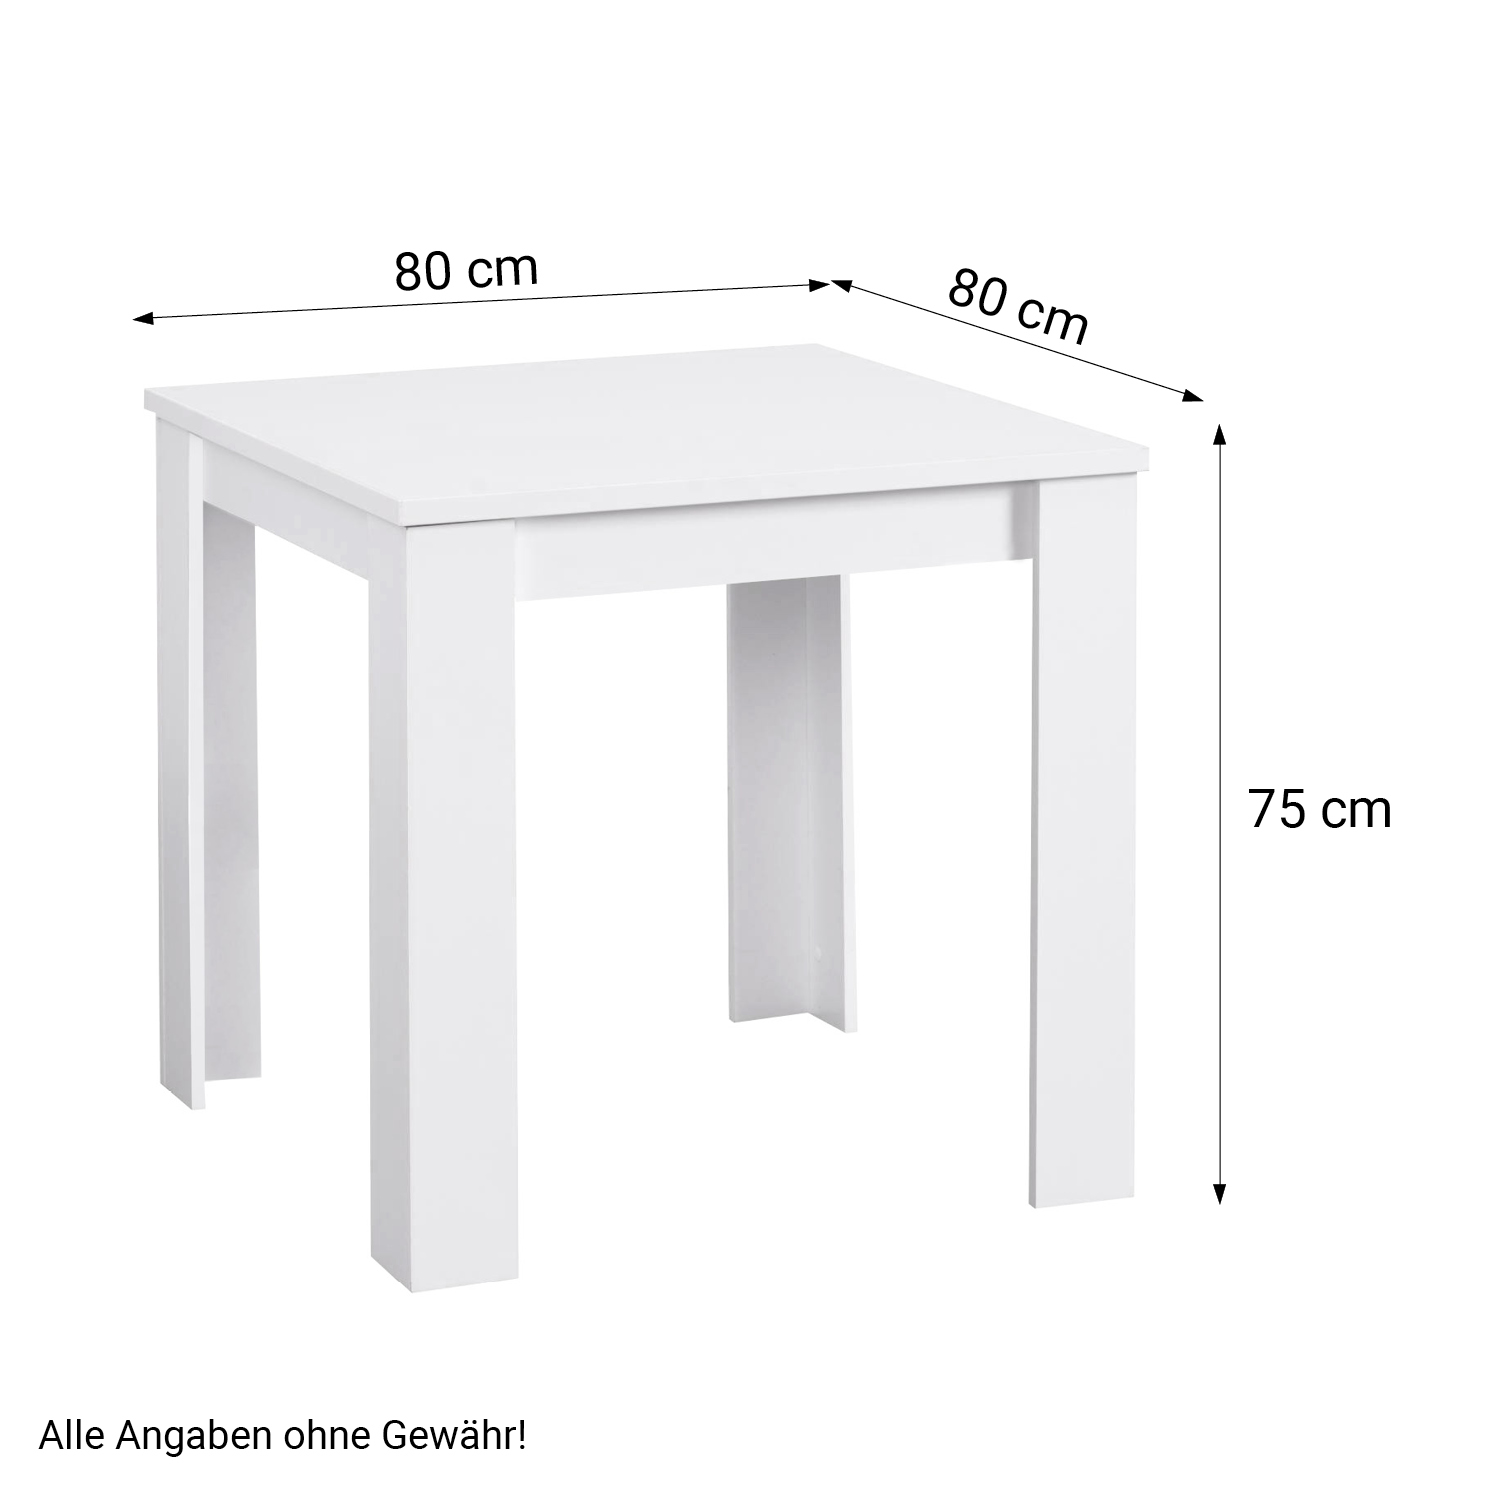 Essgruppe mit 2 Stühlen Esstisch Weiß 80x80 cm Esszimmertisch Holz Massiv Polsterstühle Samt Grau